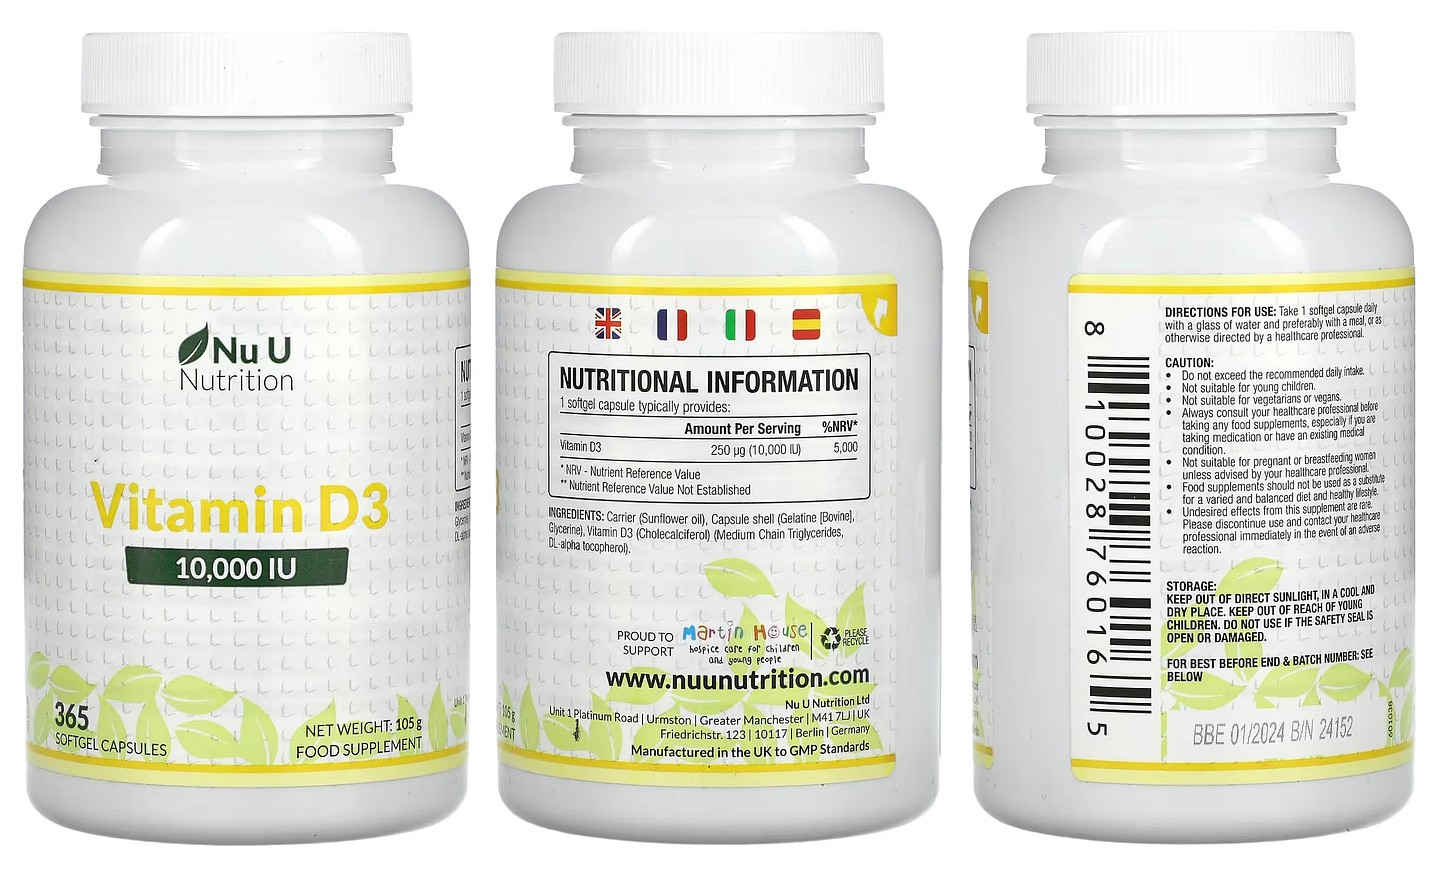 Nu U Nutrition, Vitamin D3 packaging